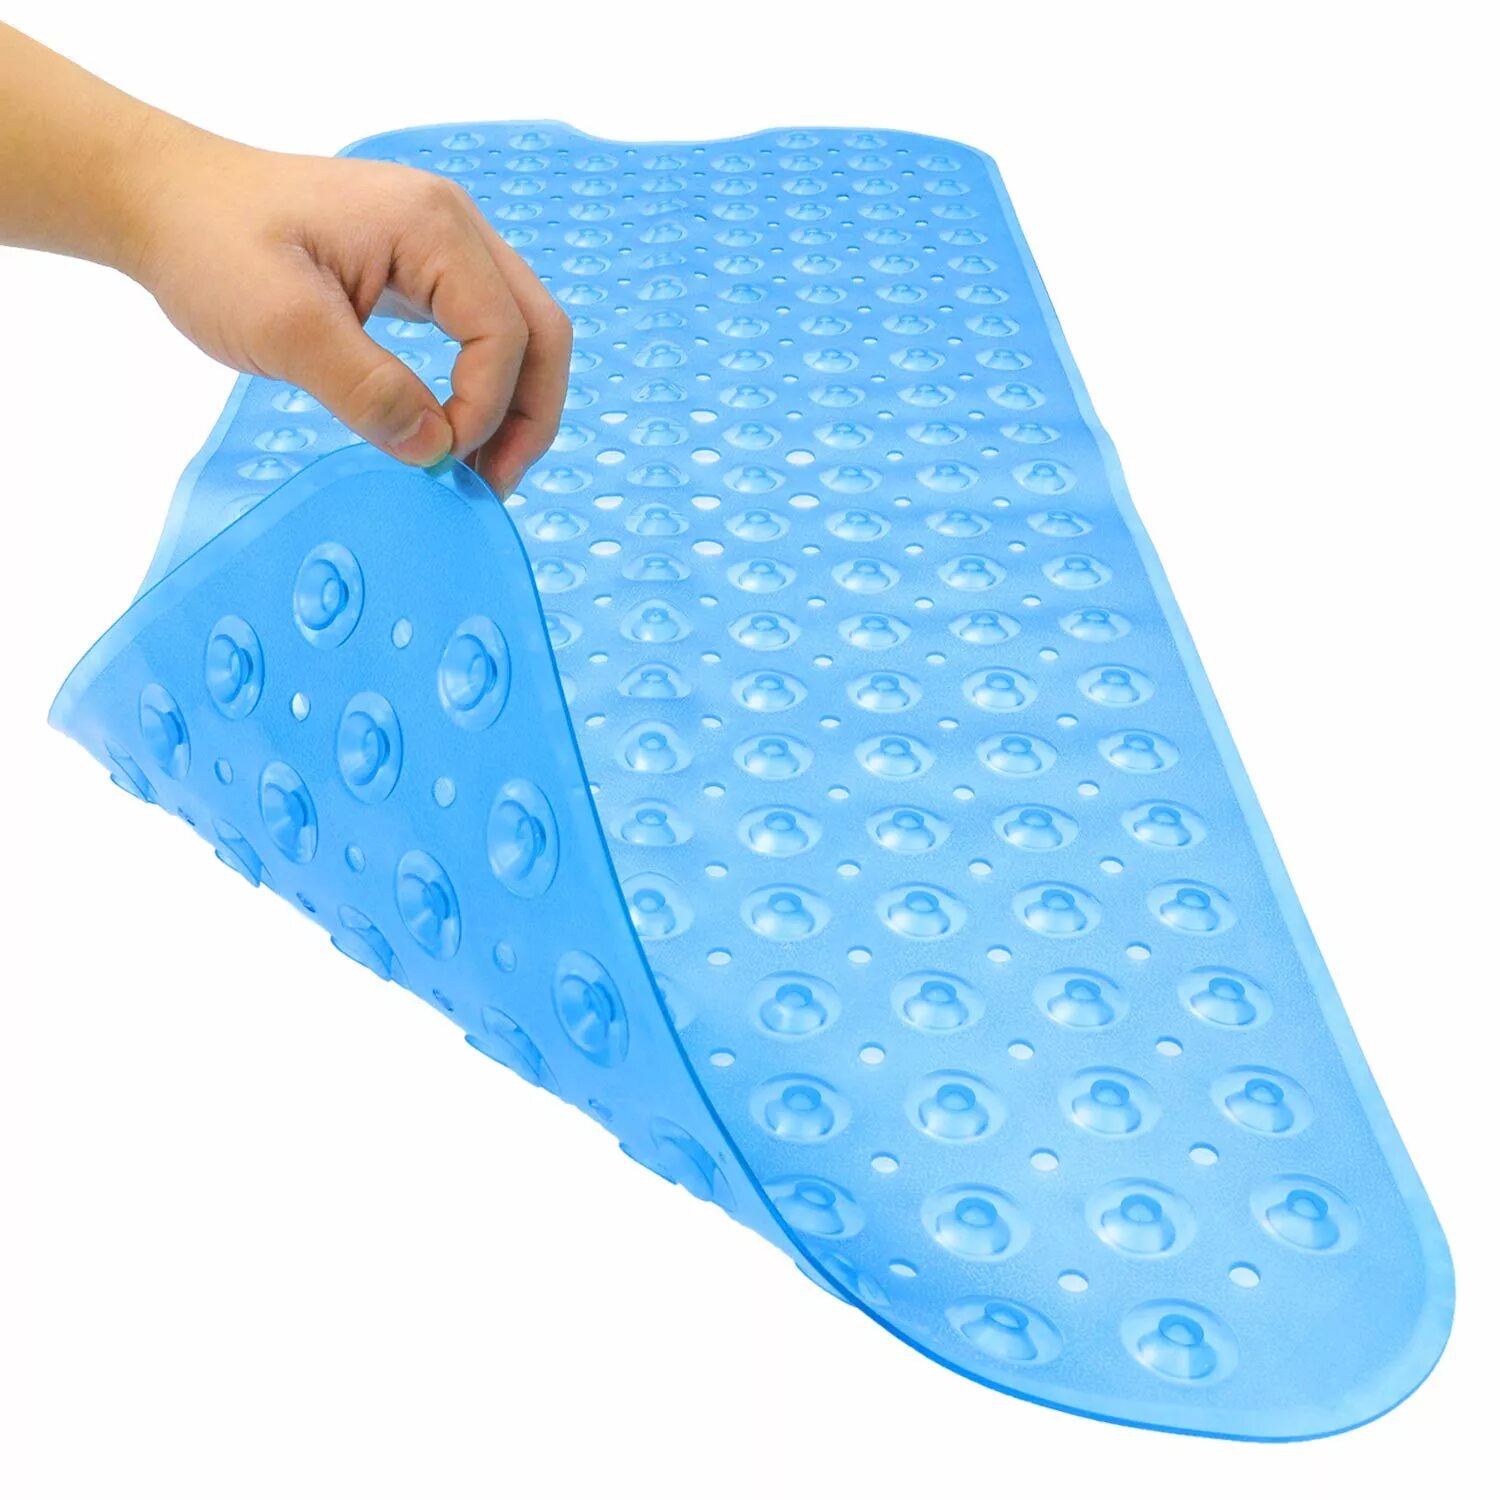 Коврик противоскользящий ПВХ Anti-Slip. Нескользящий коврик для ванной BABYONO non-Slip Bath mat. Антискользящий коврик массажный 38х6. Коврик противоскользящий для ванны Badabulle b023016 (Blue). Коврики для ванной можно стирать